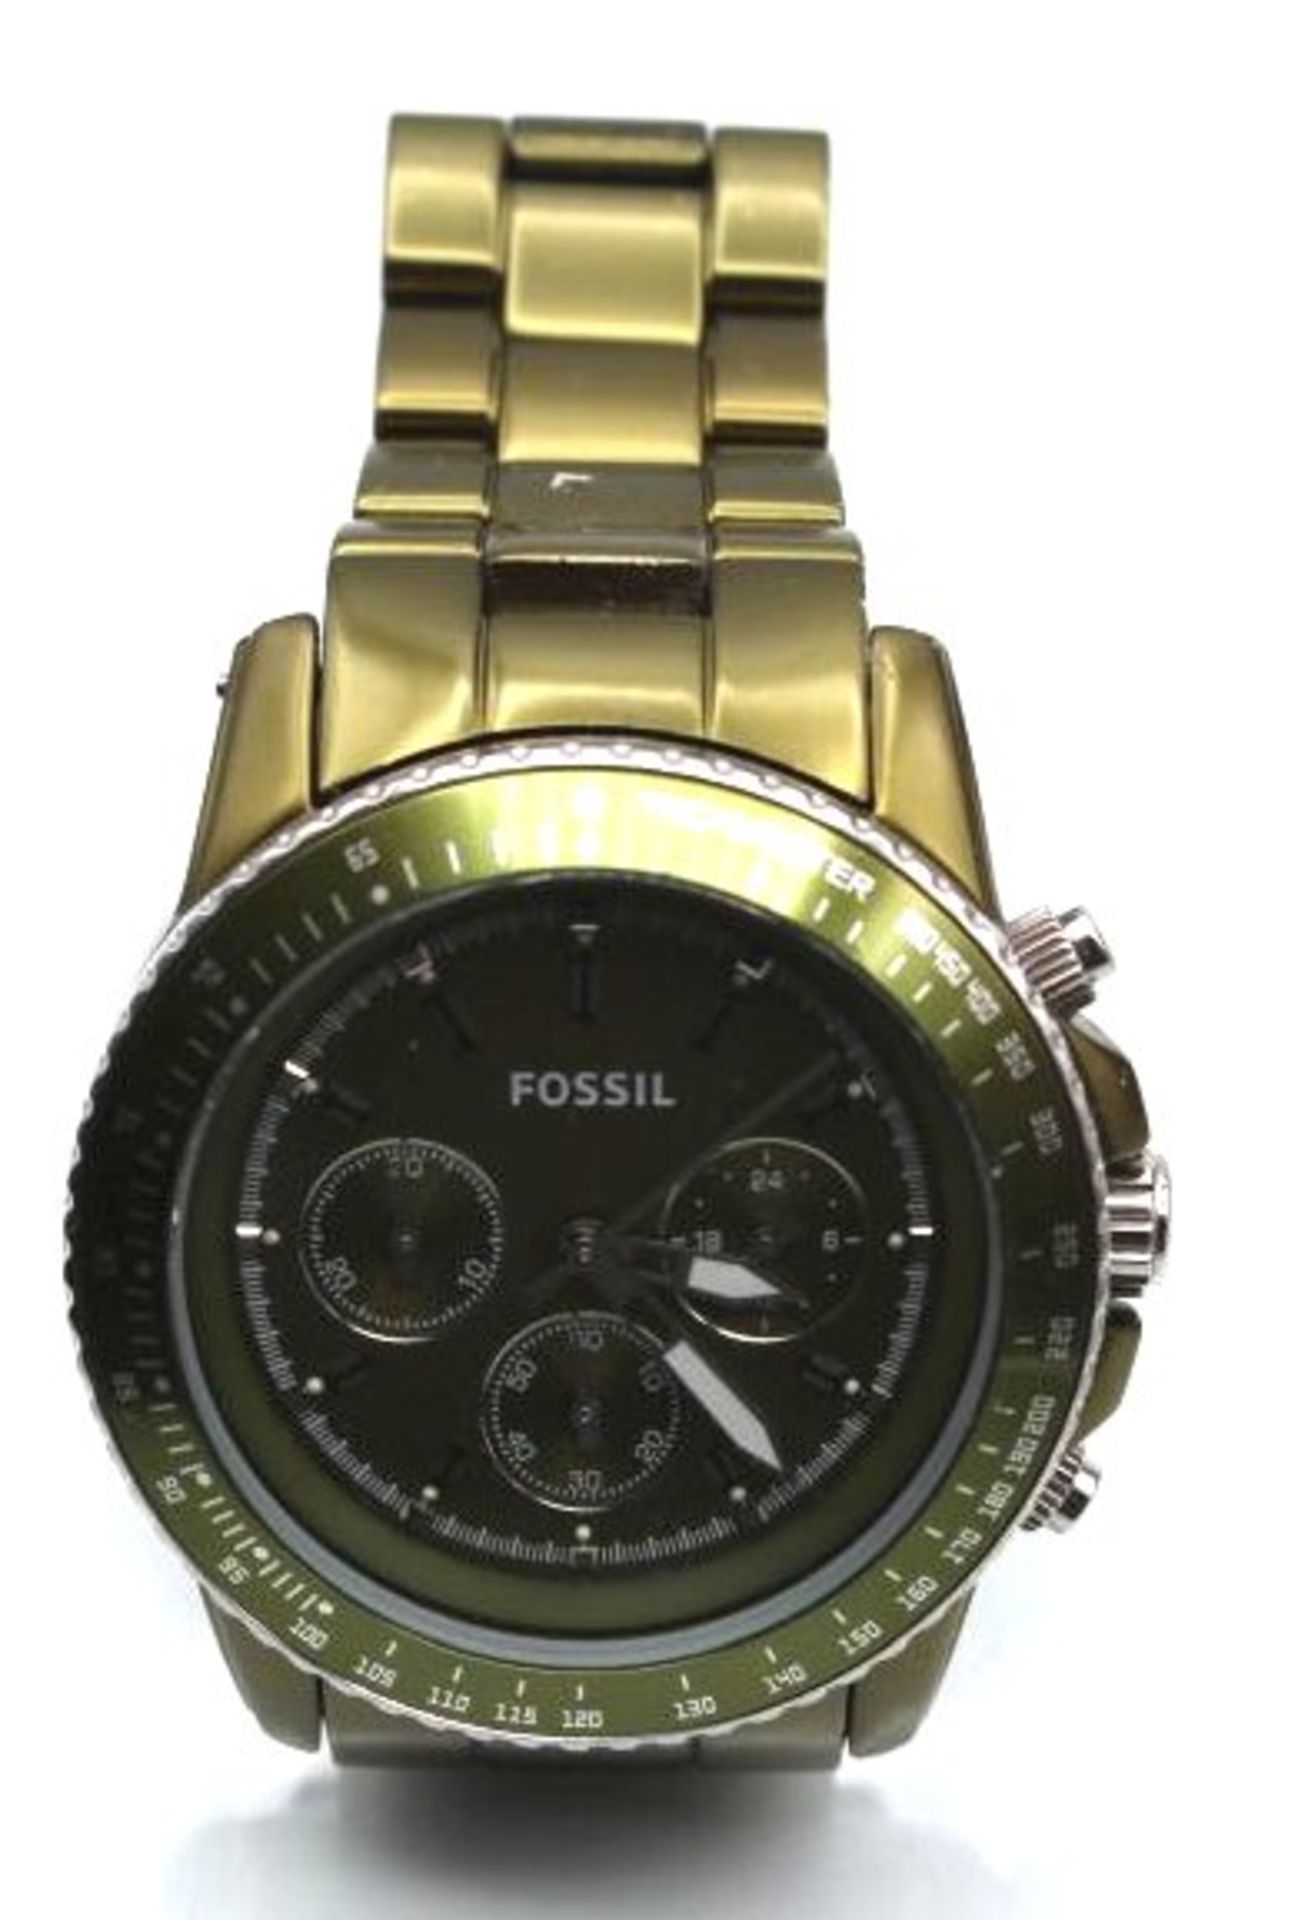 Armbanduhr, Fossil, grün, Quartz, Werk läuft, D-ca. 4,5cm, guter Zustand, orig. Box.- - -22.61 % - Bild 2 aus 2